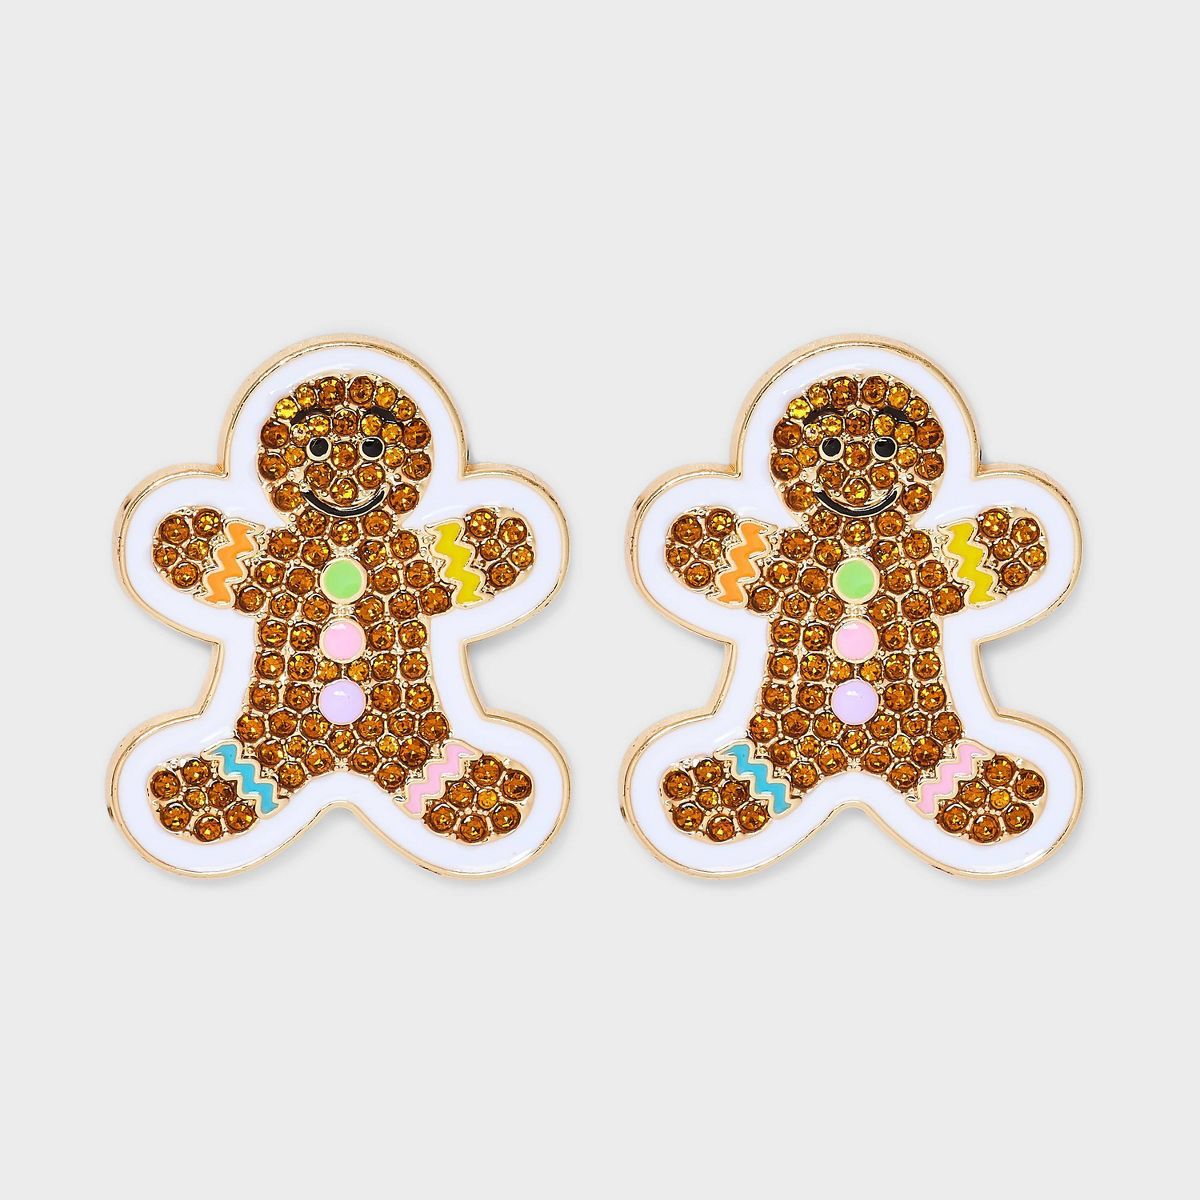 SUGARFIX by BaubleBar "Sweet Tooth" Stud Earrings - Brown | Target